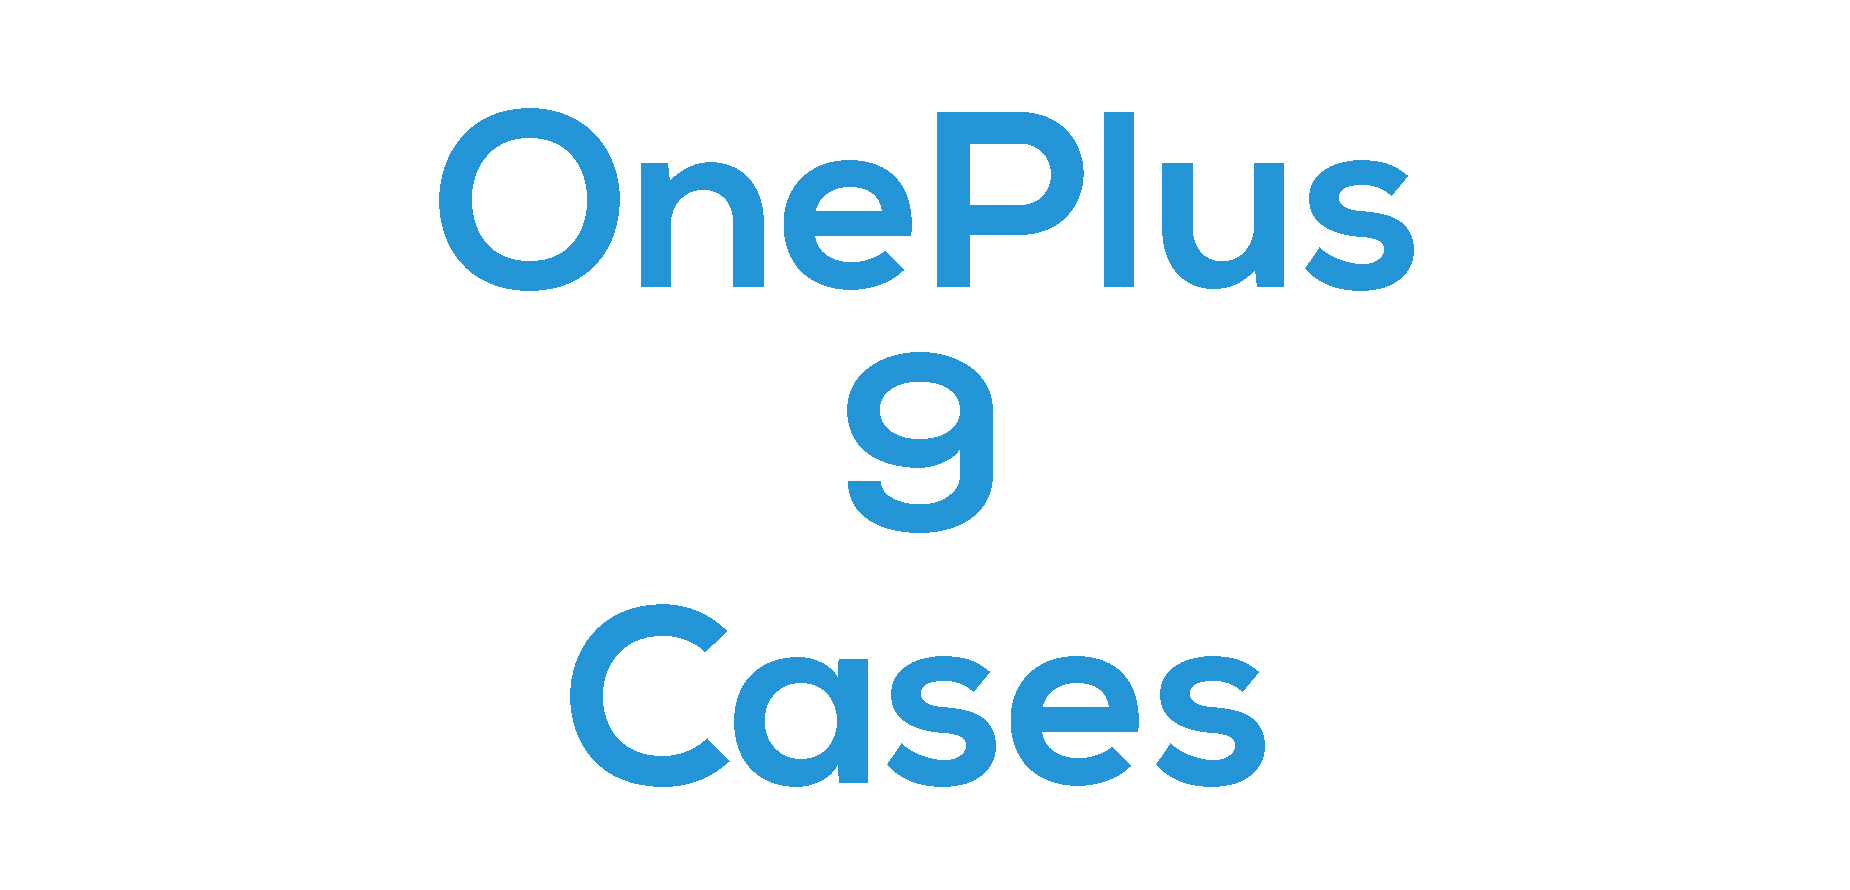 OnePlus 9 Cases